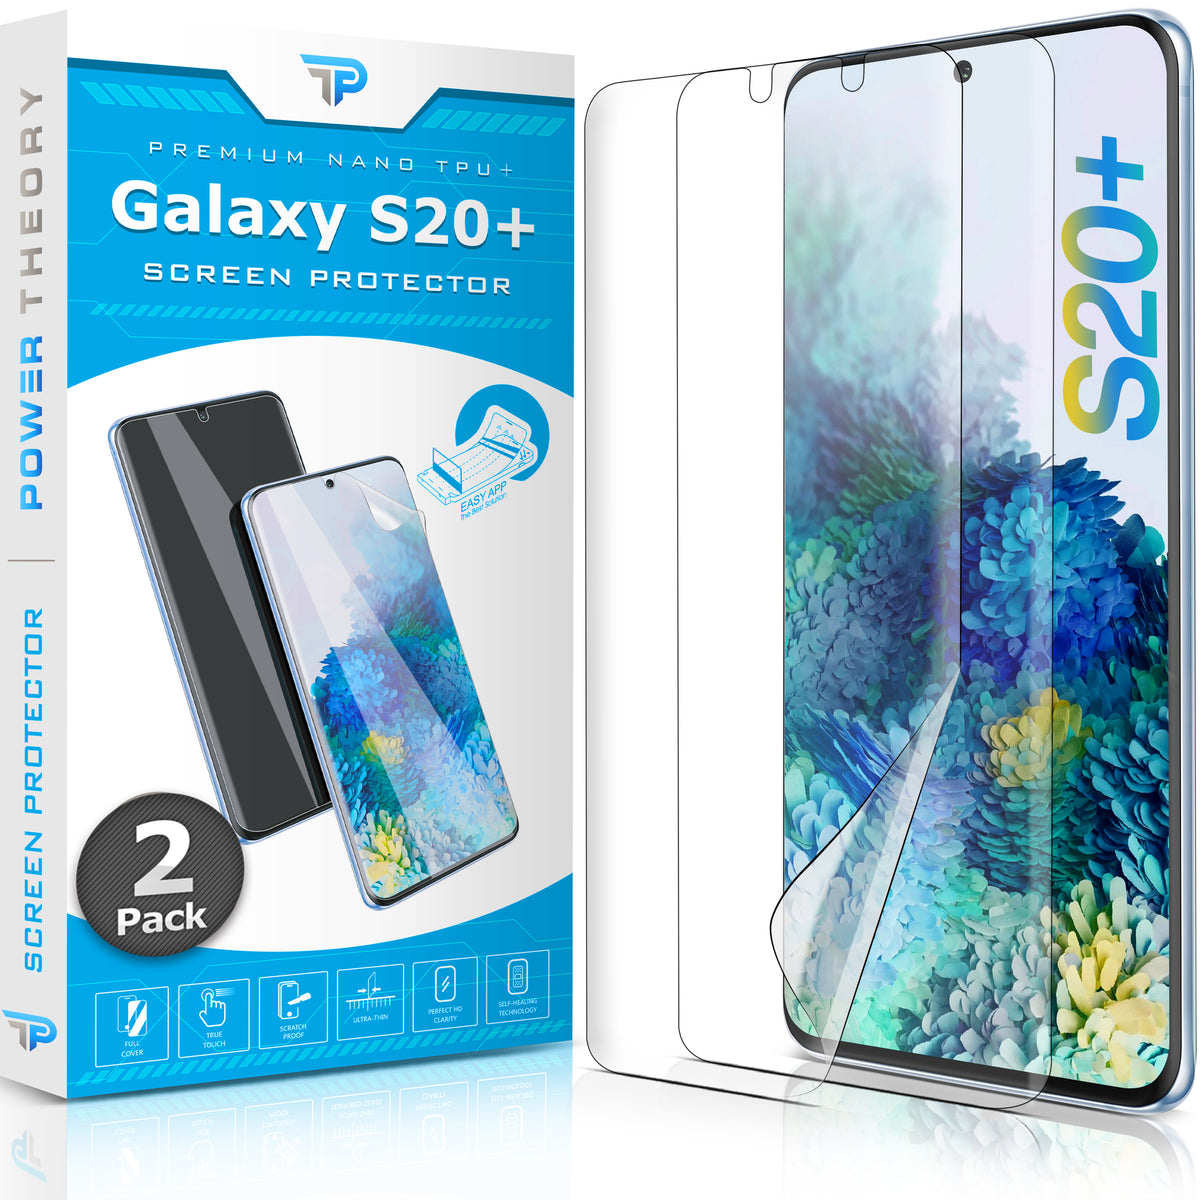 Samsung Galaxy S20 Plus TPU Anti-Scratch Screen Protector Film [2-Pack] Cover